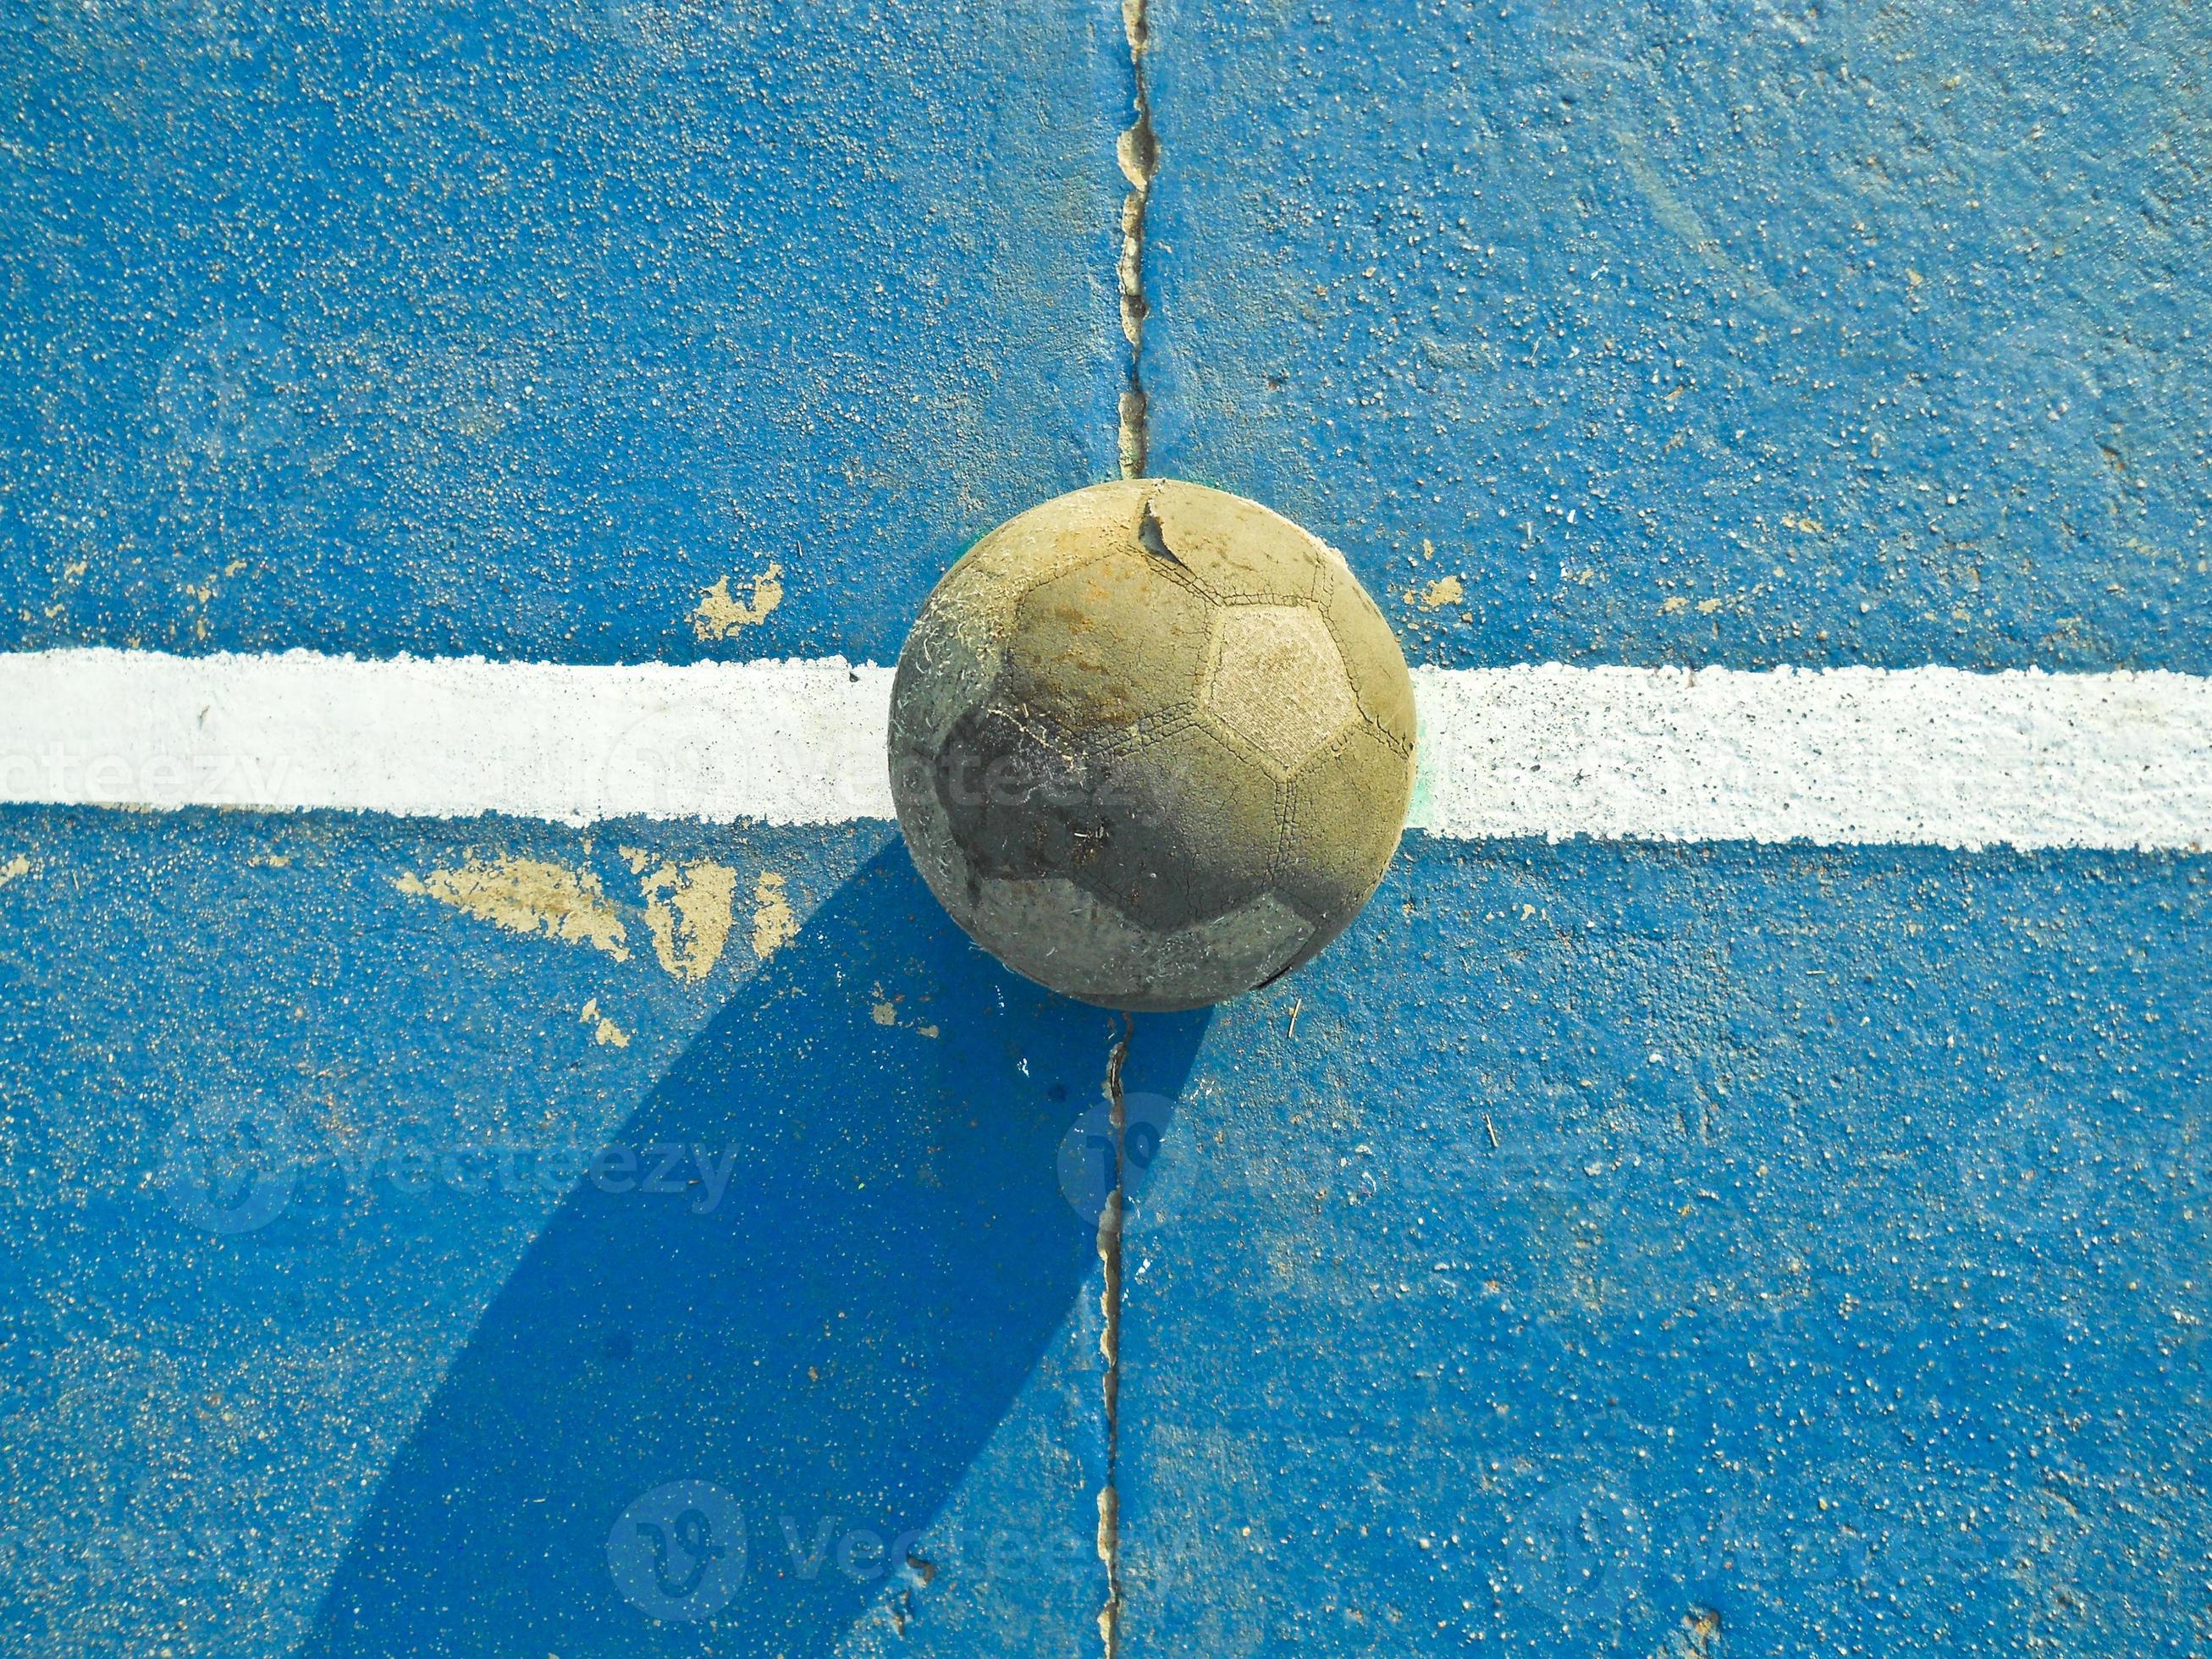 Um garoto segurando a velha bola de futebol antes de começar um jogo de  futebol